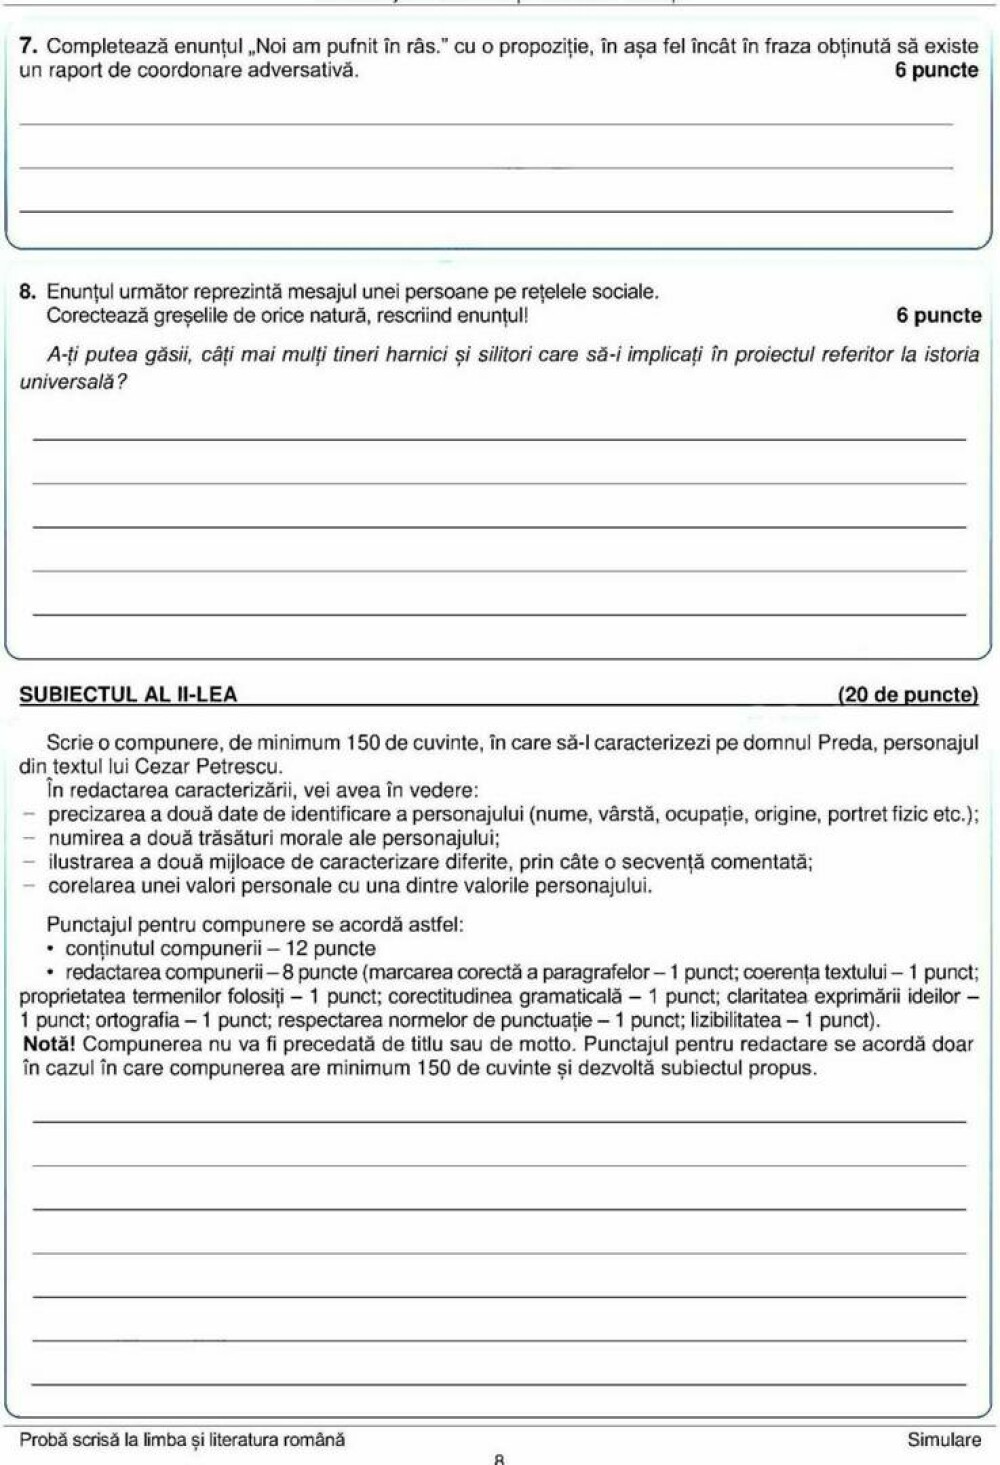 Simulare Evaluarea Națională 2022. Subiectele la Limba și Literatura Română - Imaginea 8